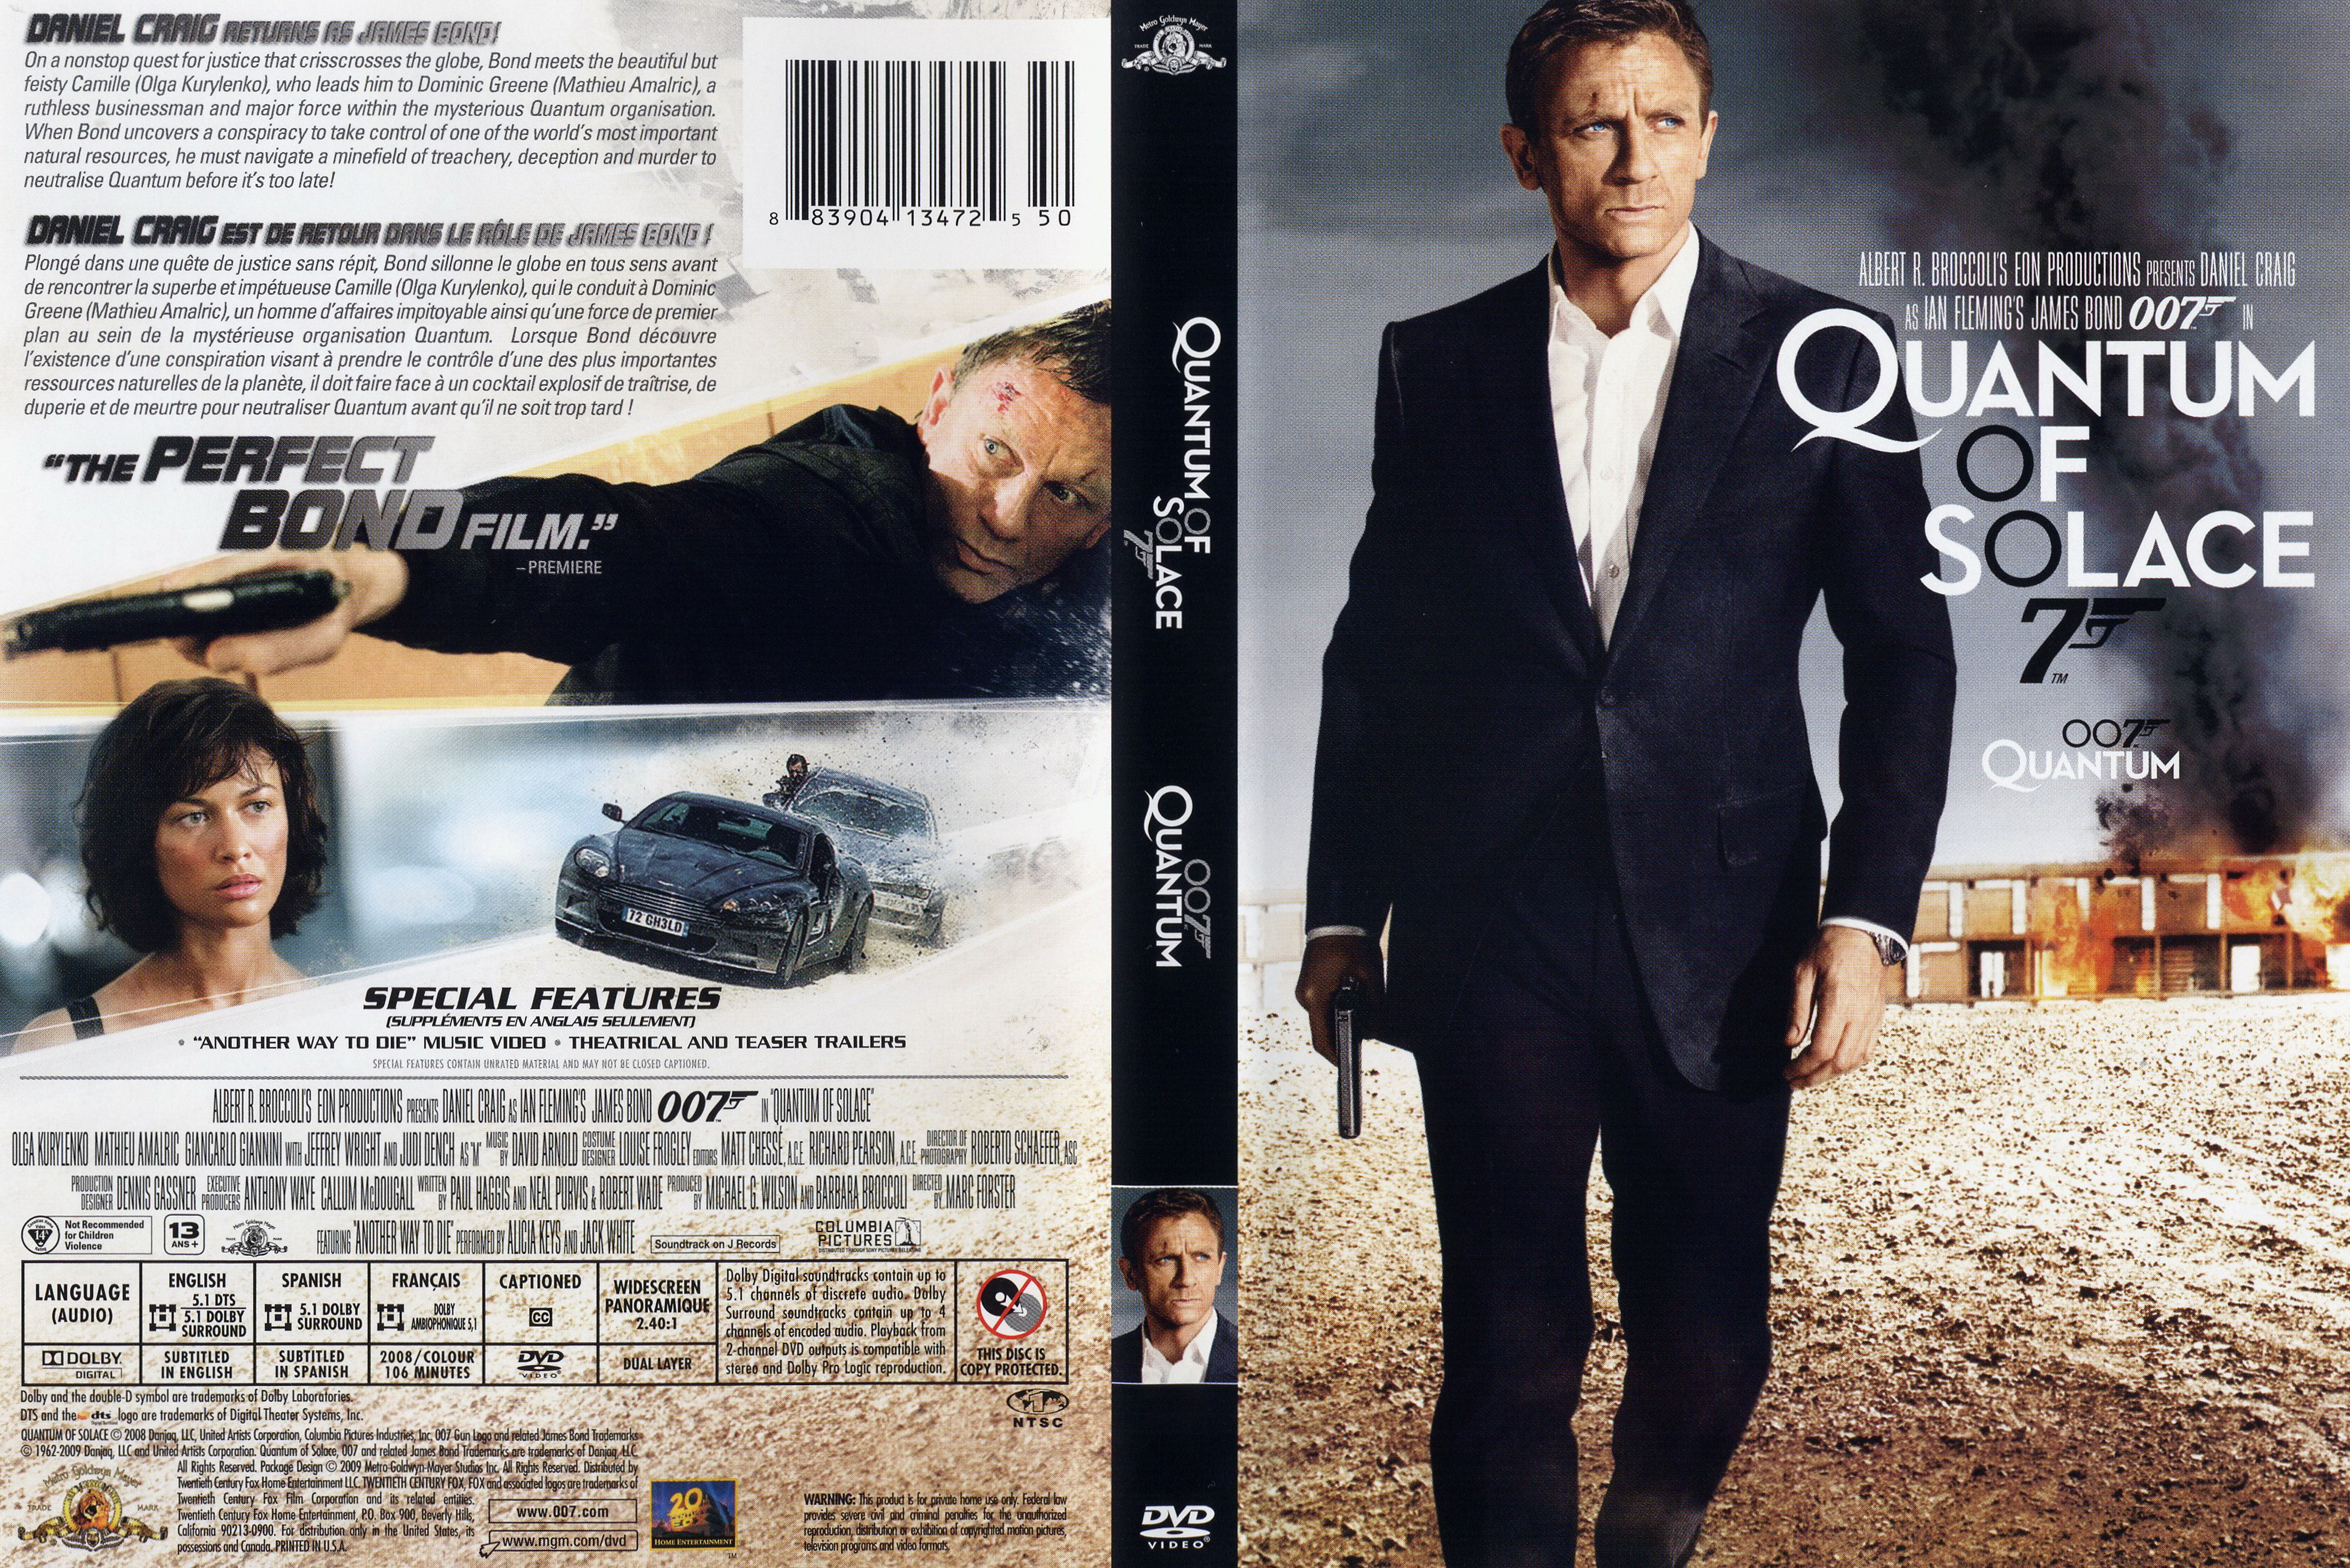 Jaquette DVD James Bond 007 Quantum of solace (Canadienne)